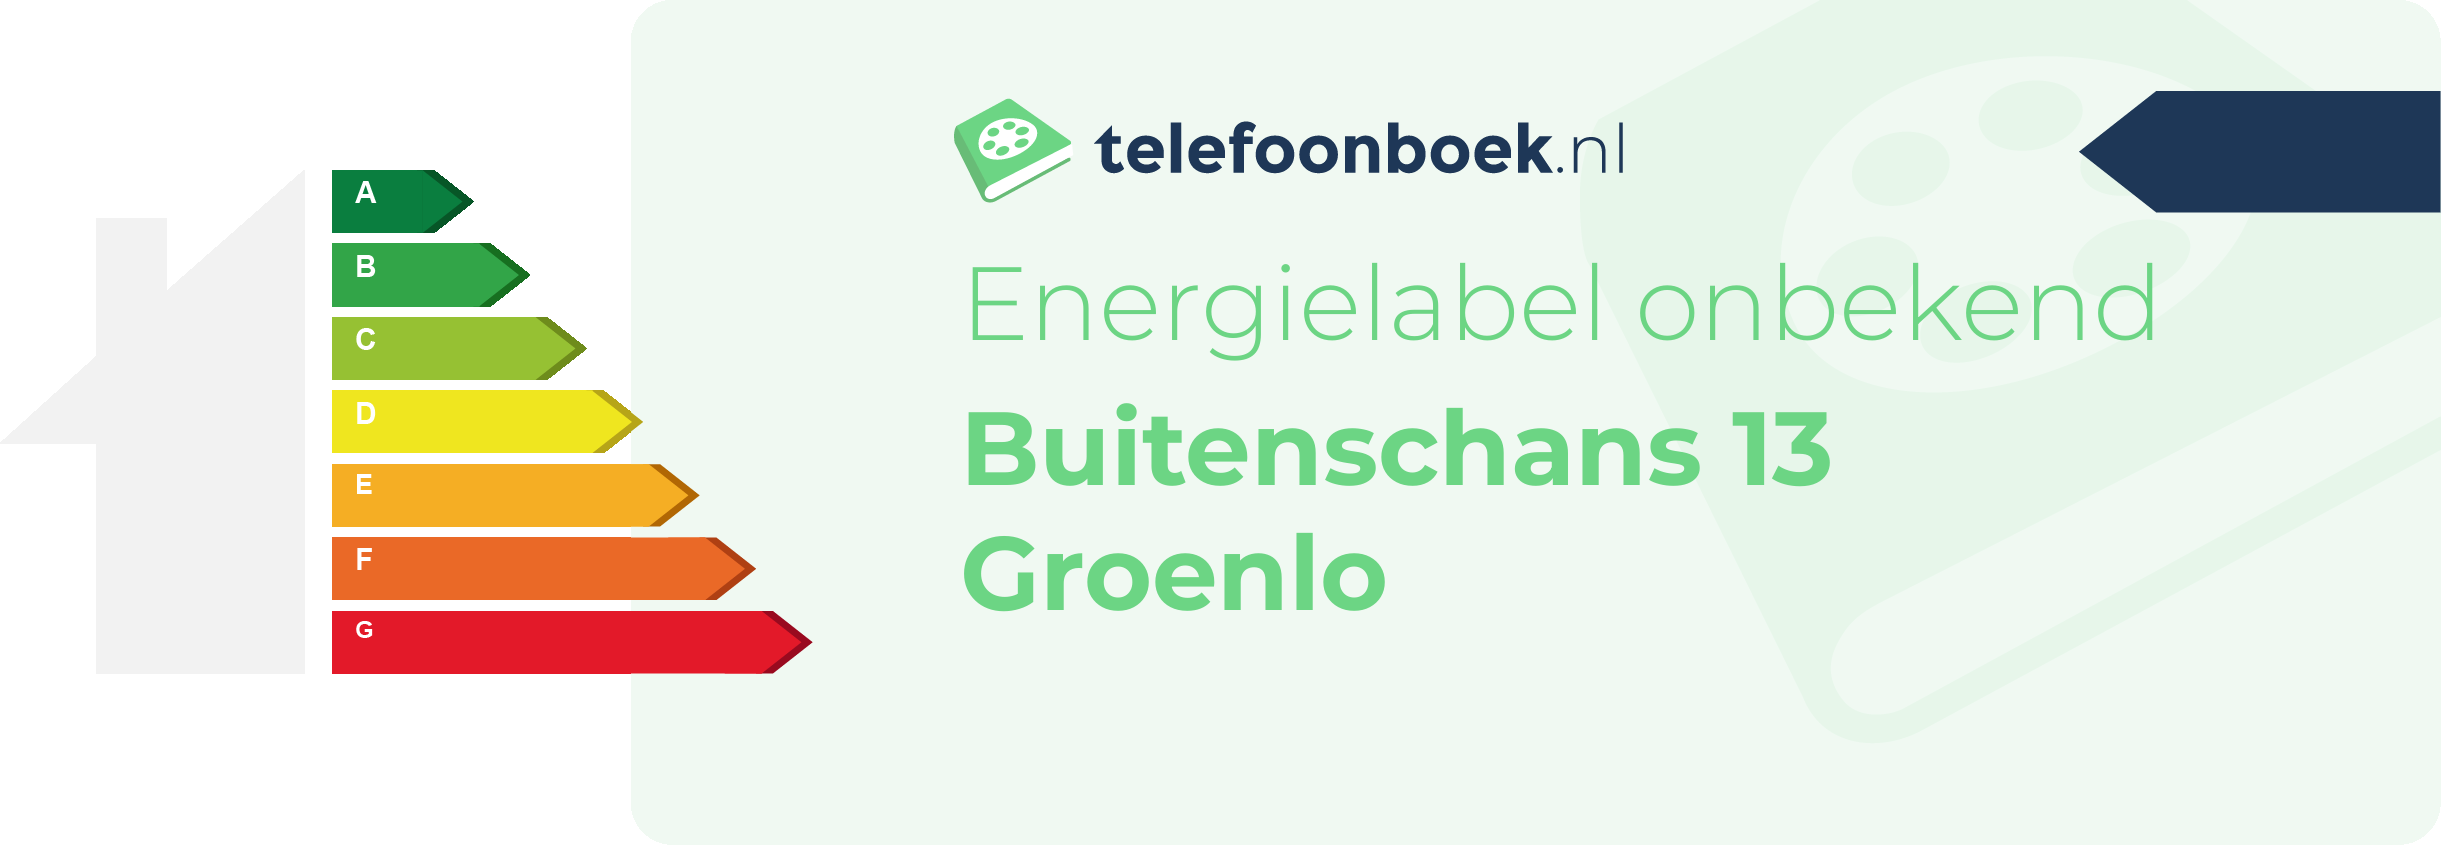 Energielabel Buitenschans 13 Groenlo